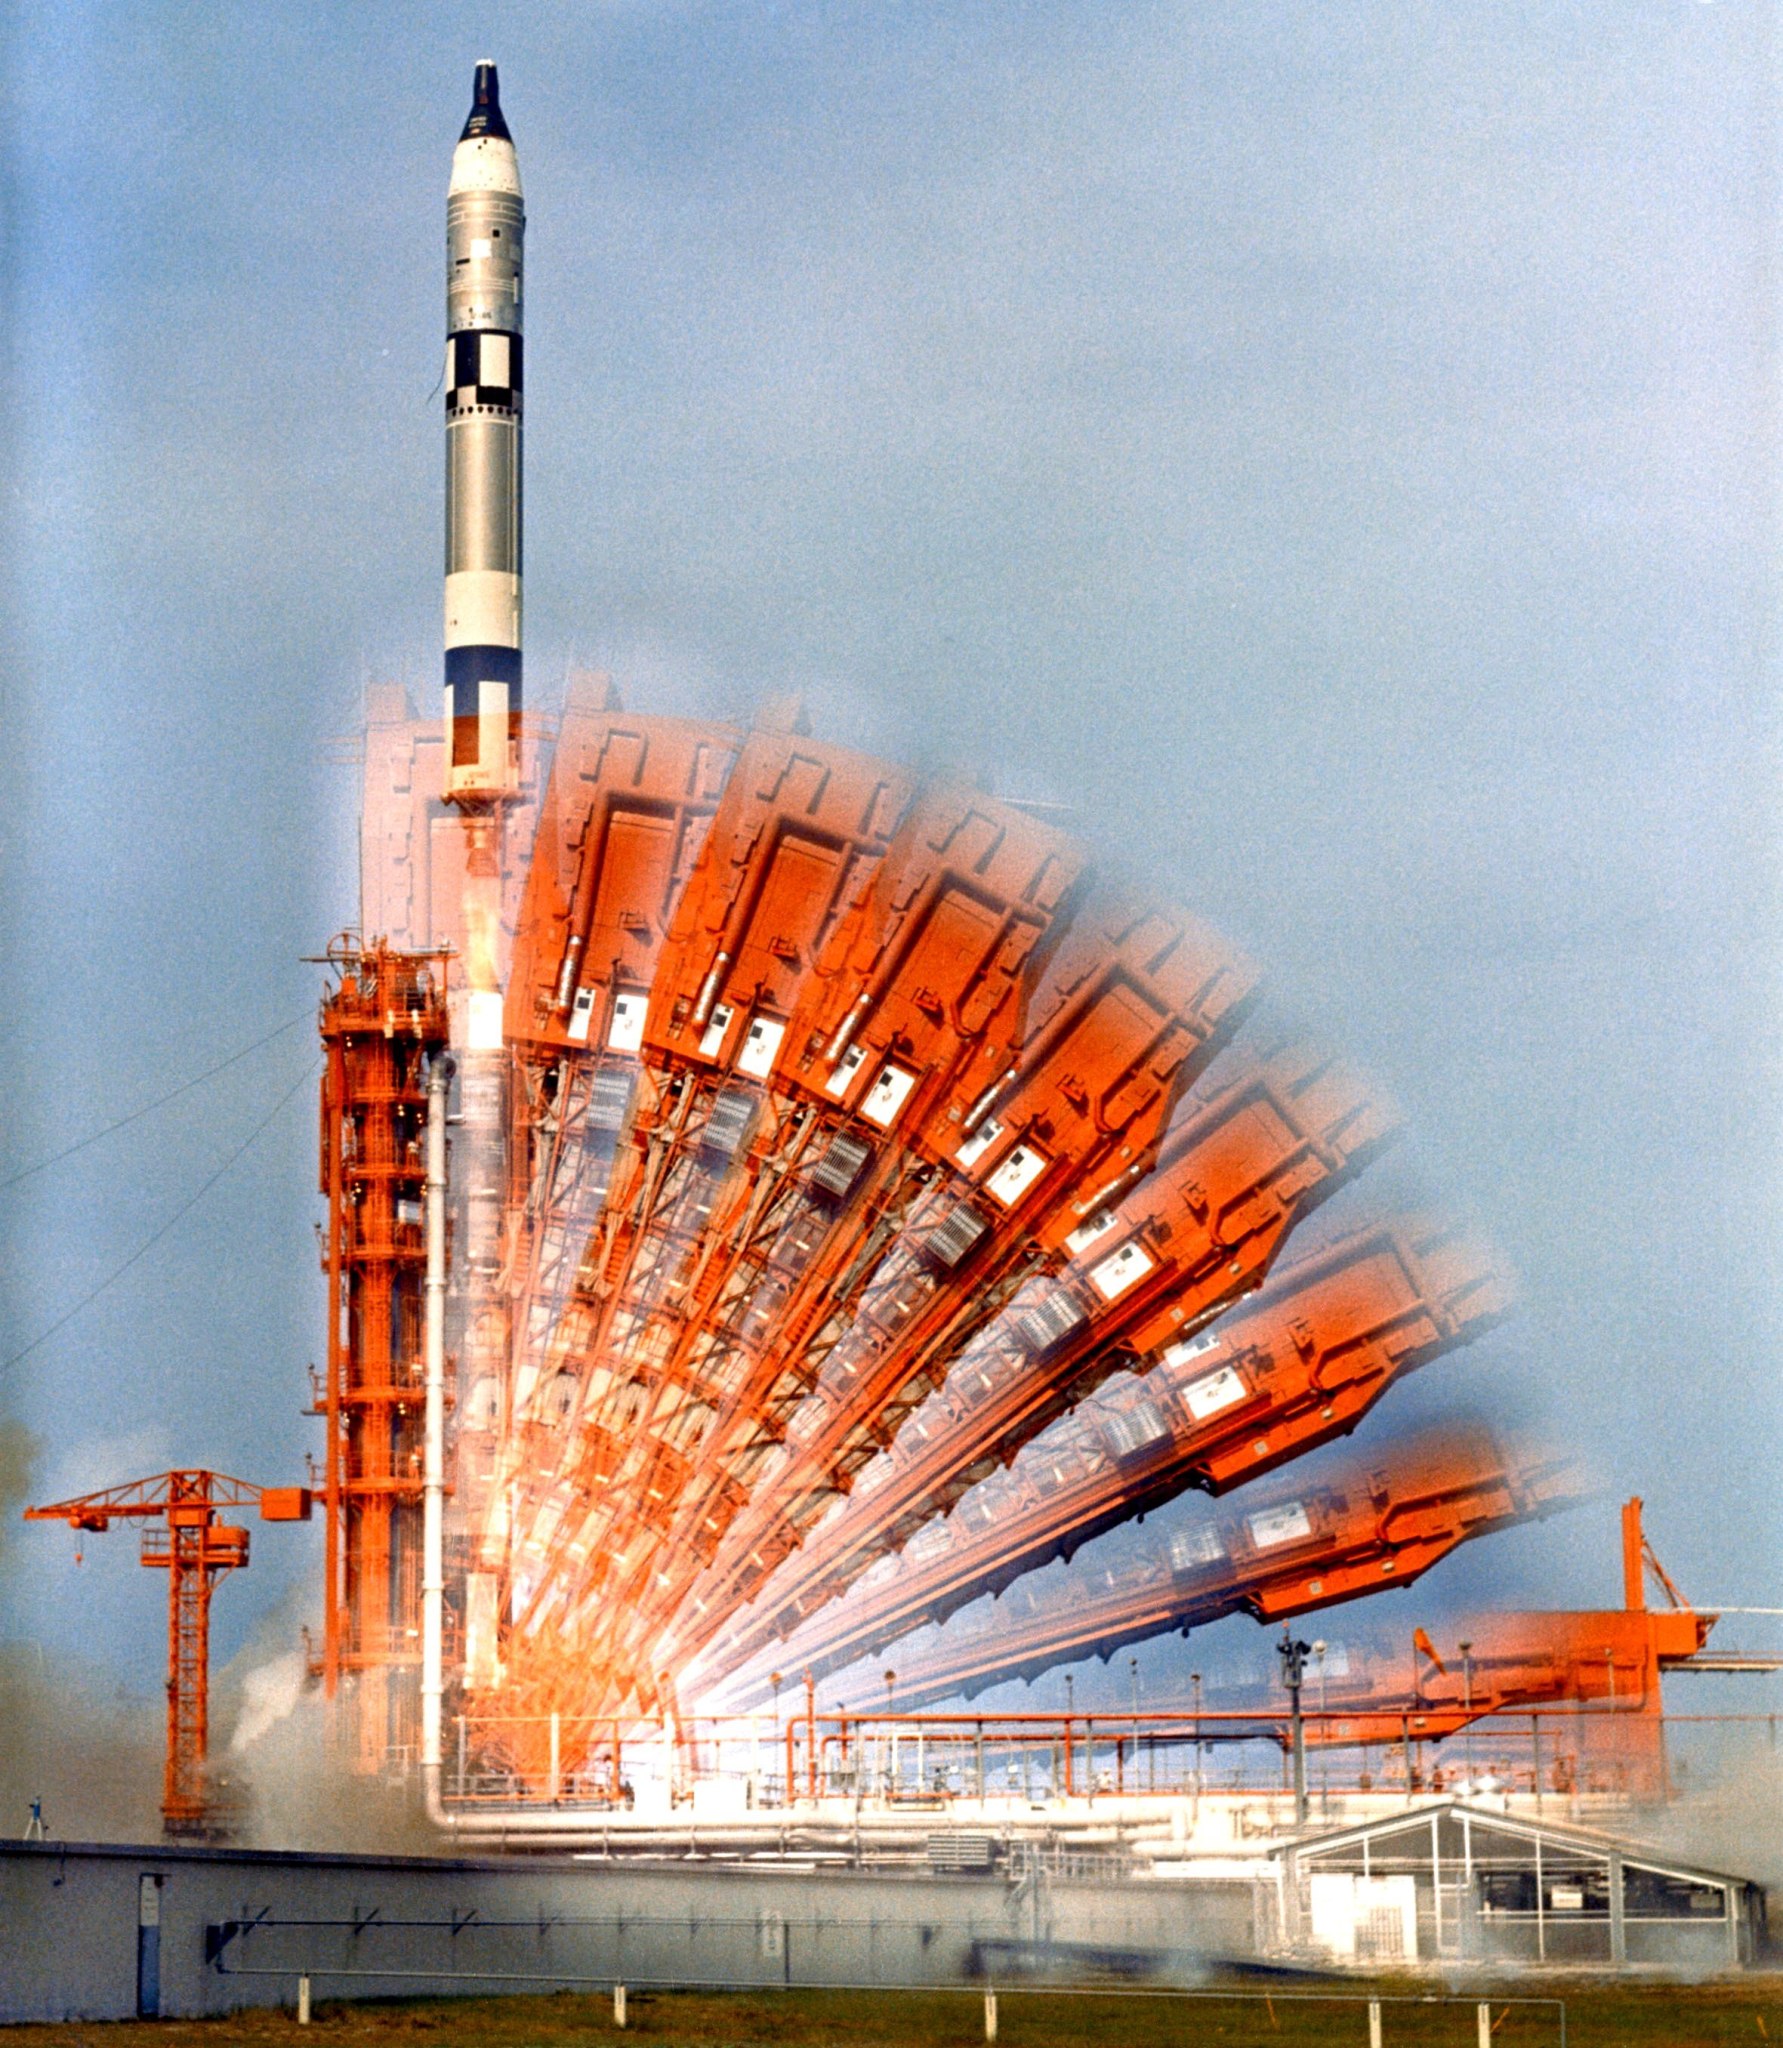 Gemini Titan X liftoff multiple exposure